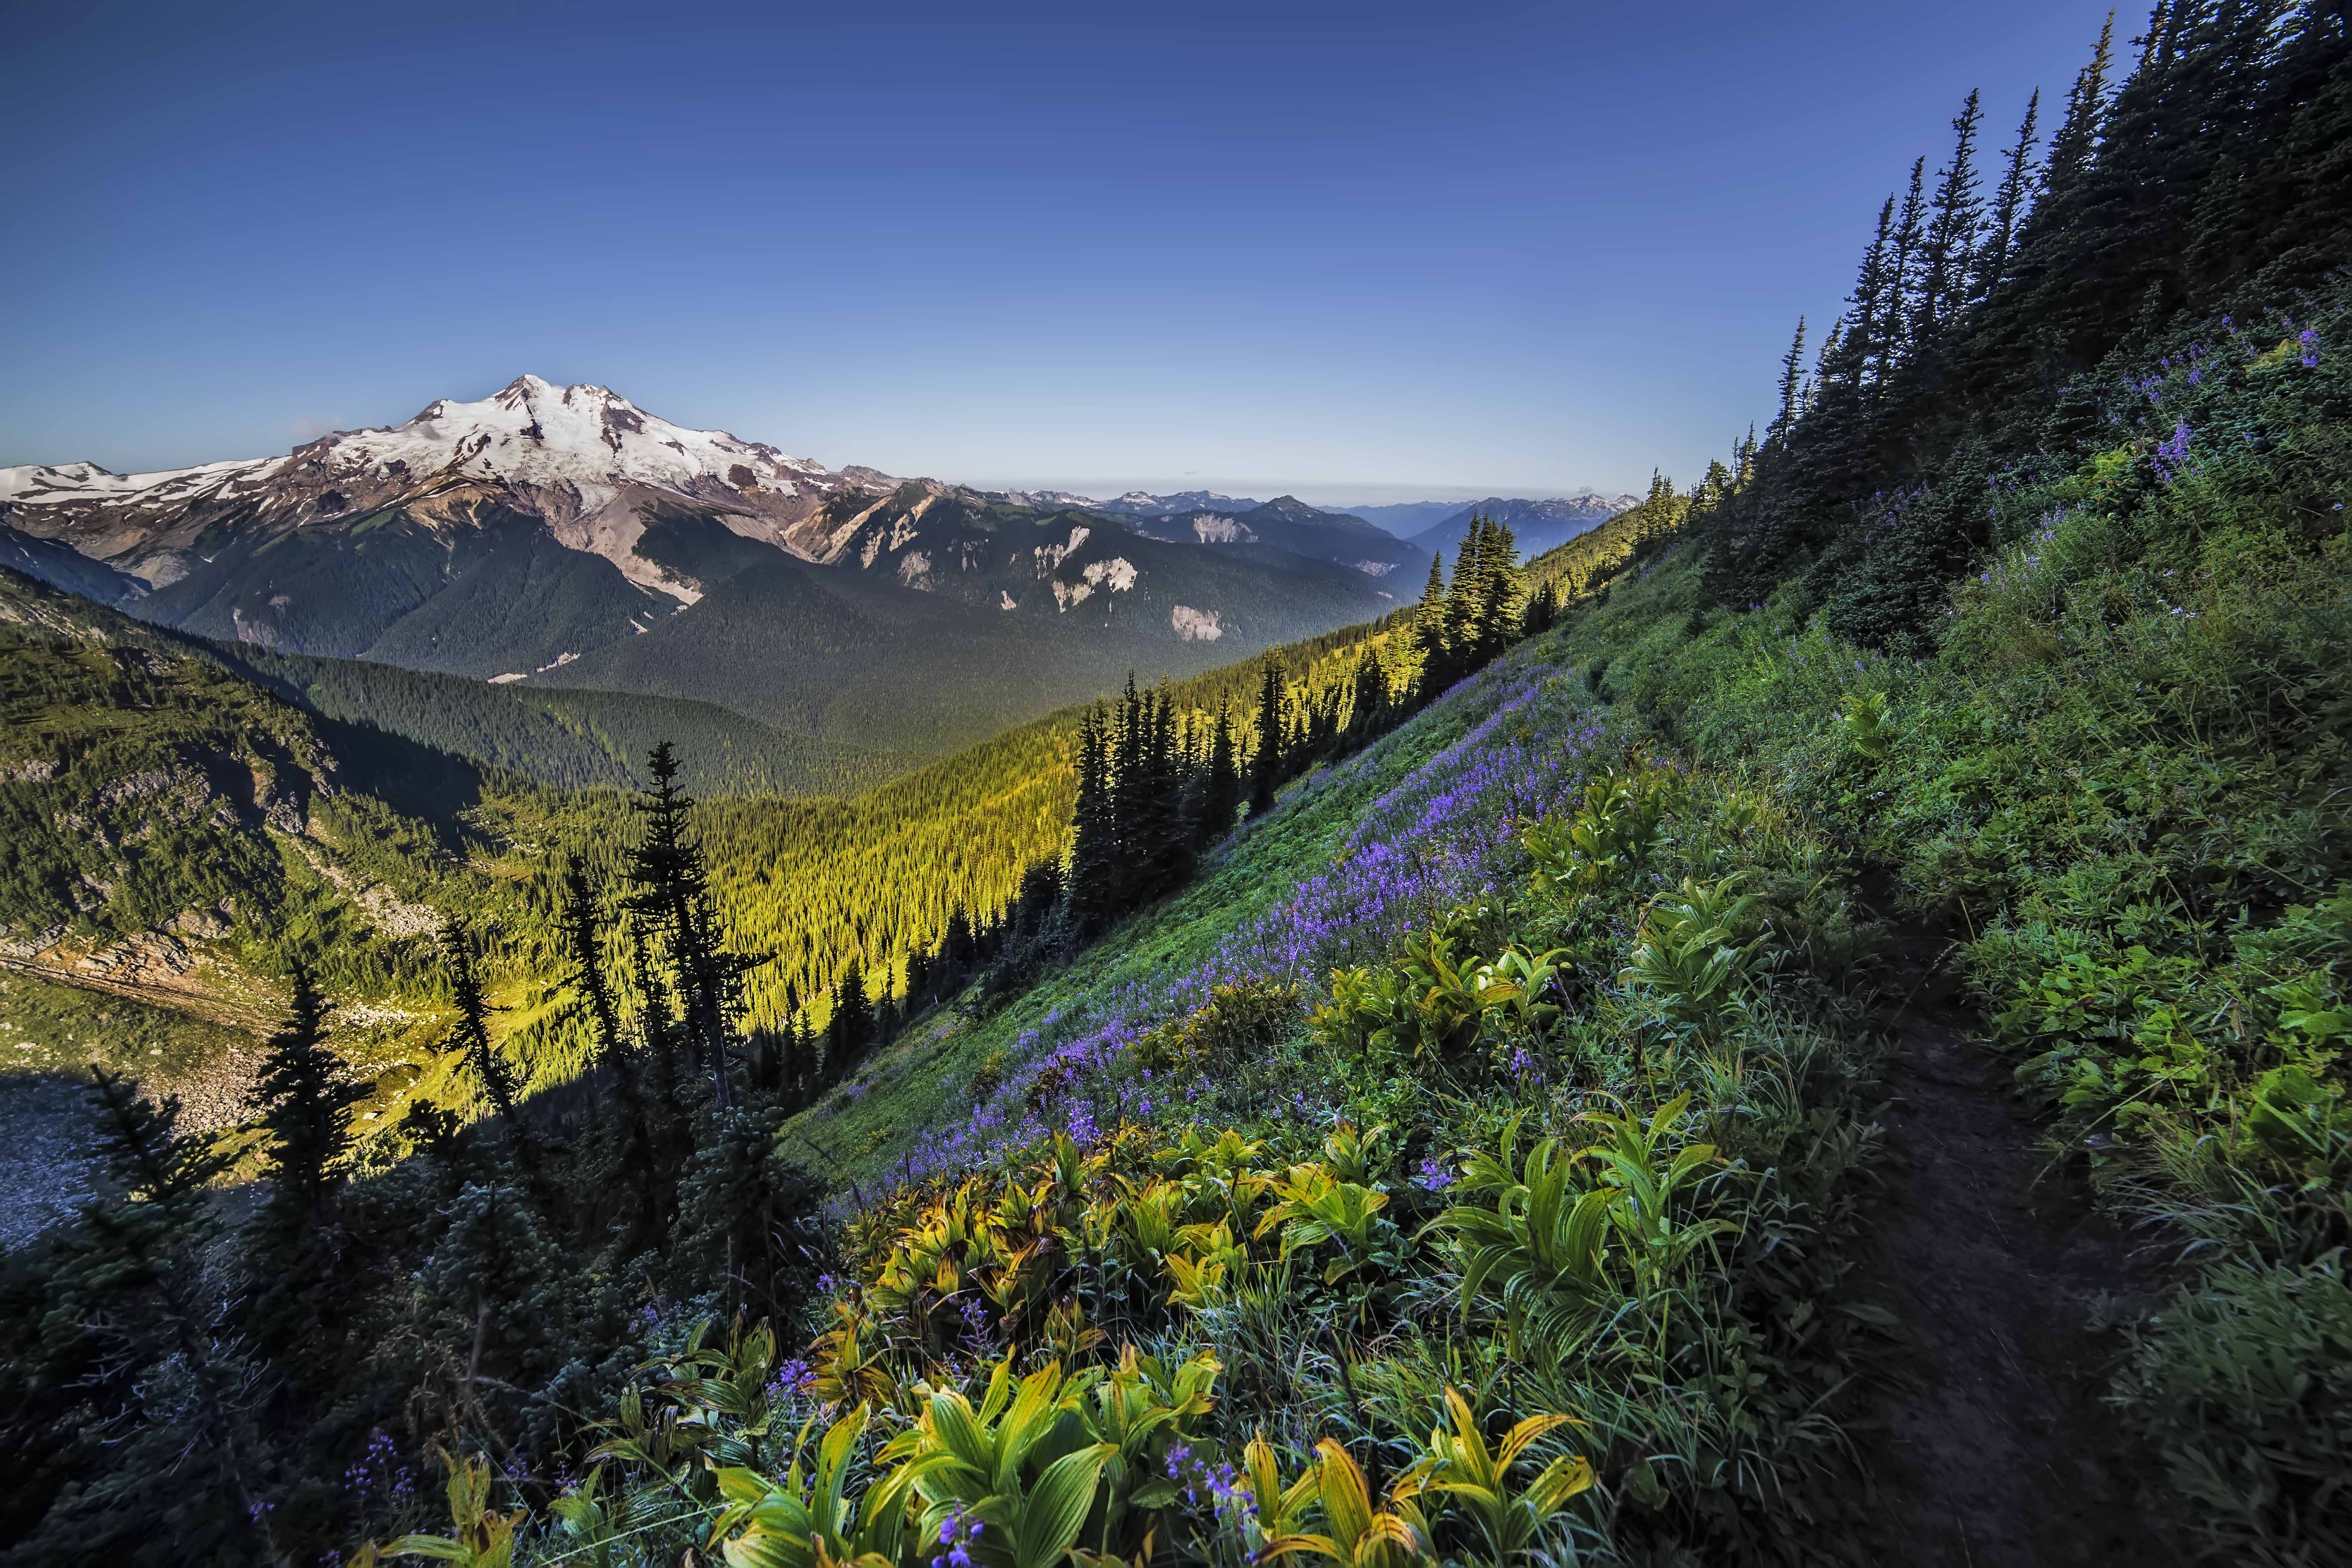 Glacier Peak Wilderness - Blog - Andy Porter Images